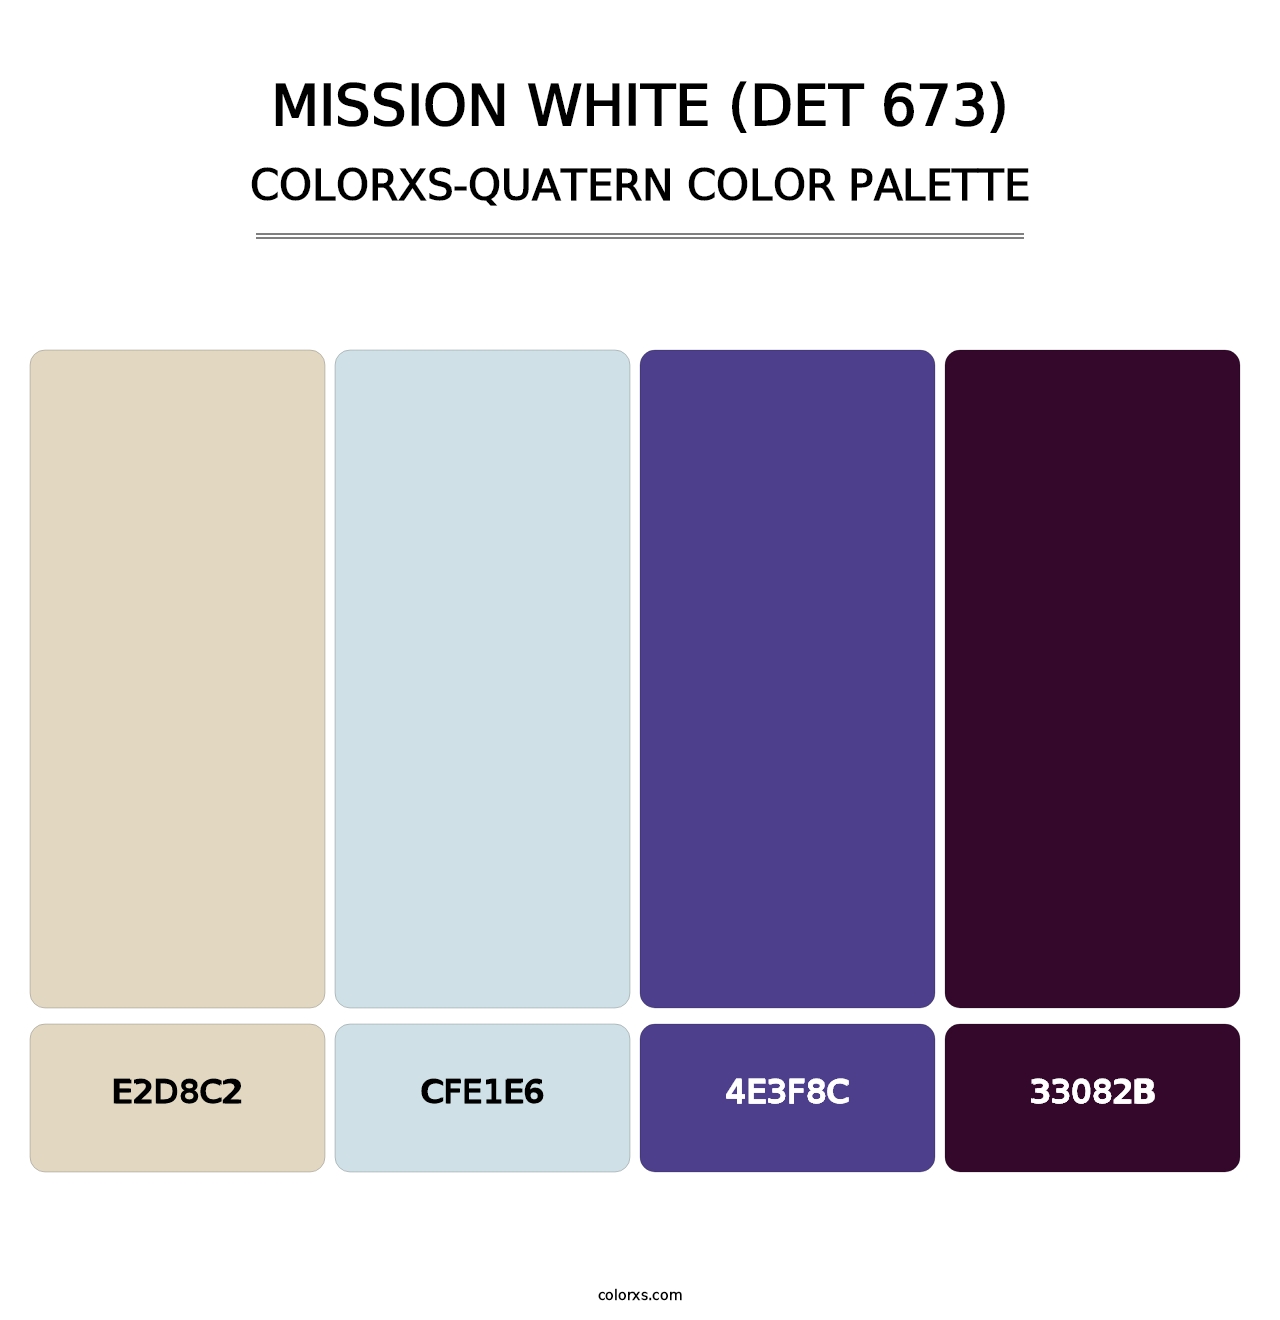 Mission White (DET 673) - Colorxs Quatern Palette